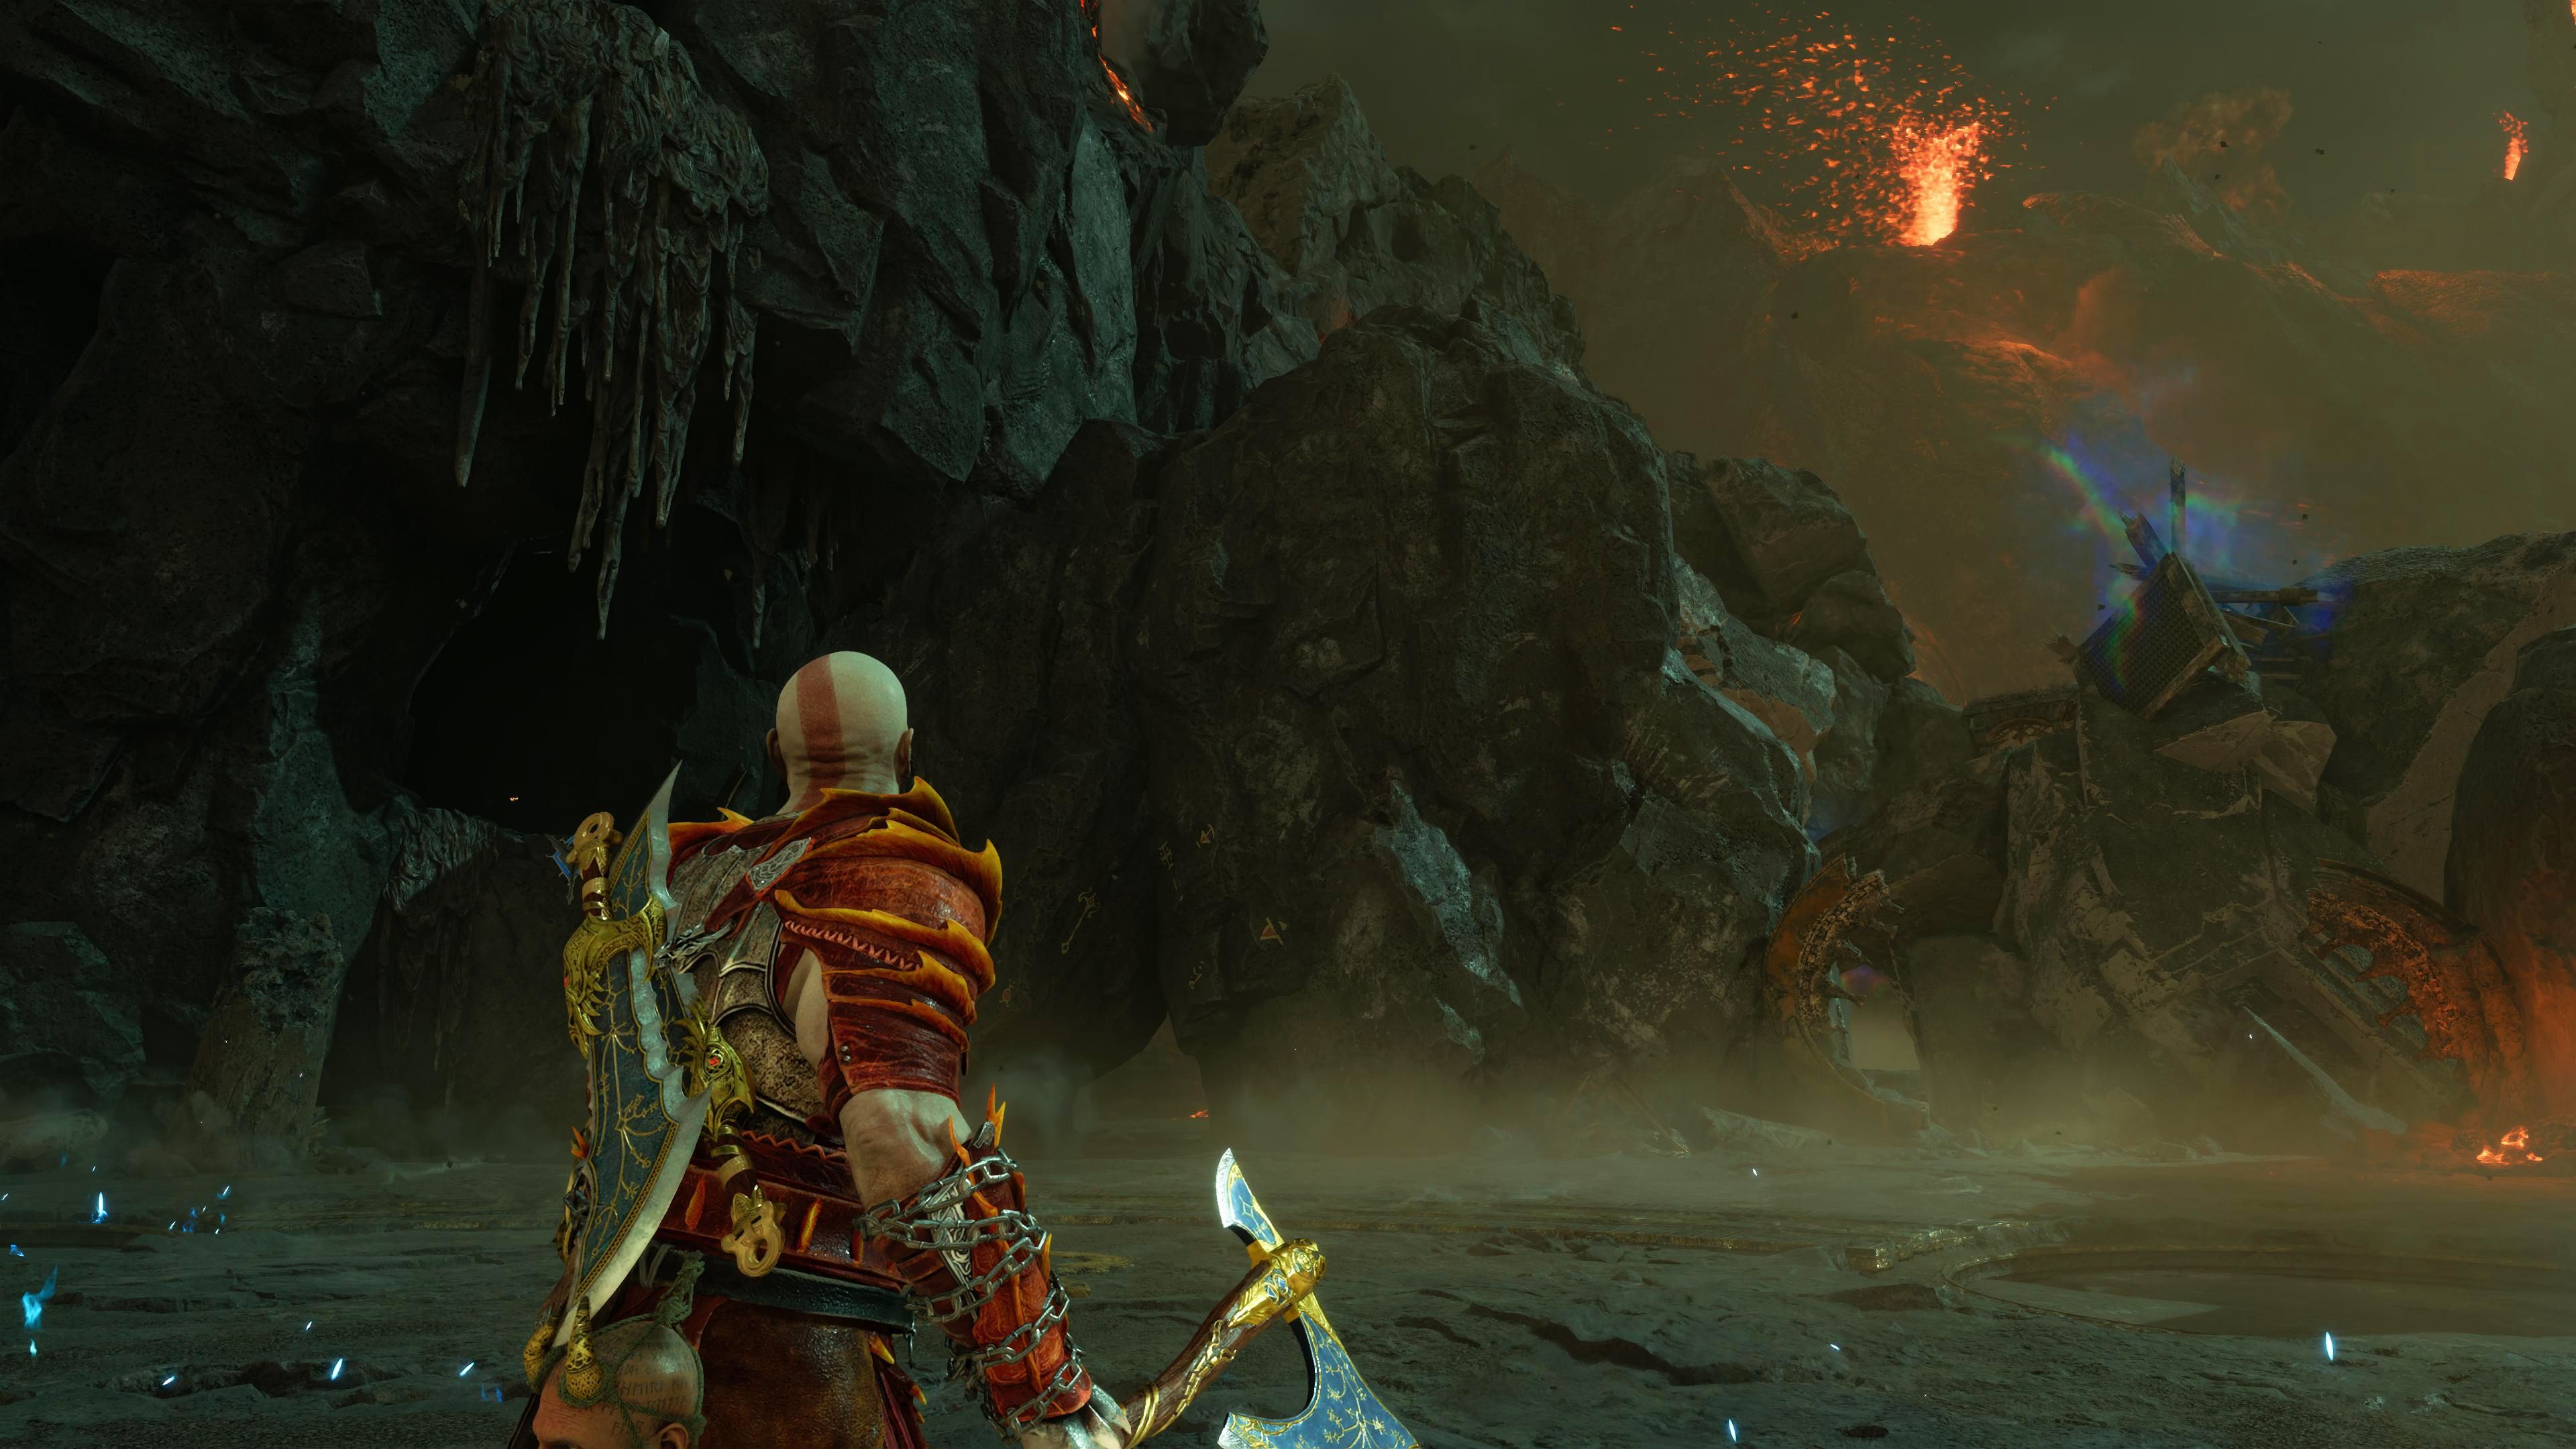 God of War Ragnarök Kratos Looking At Valkyrie Queen Gna Boss Battle Area Entrance In Muspelheim